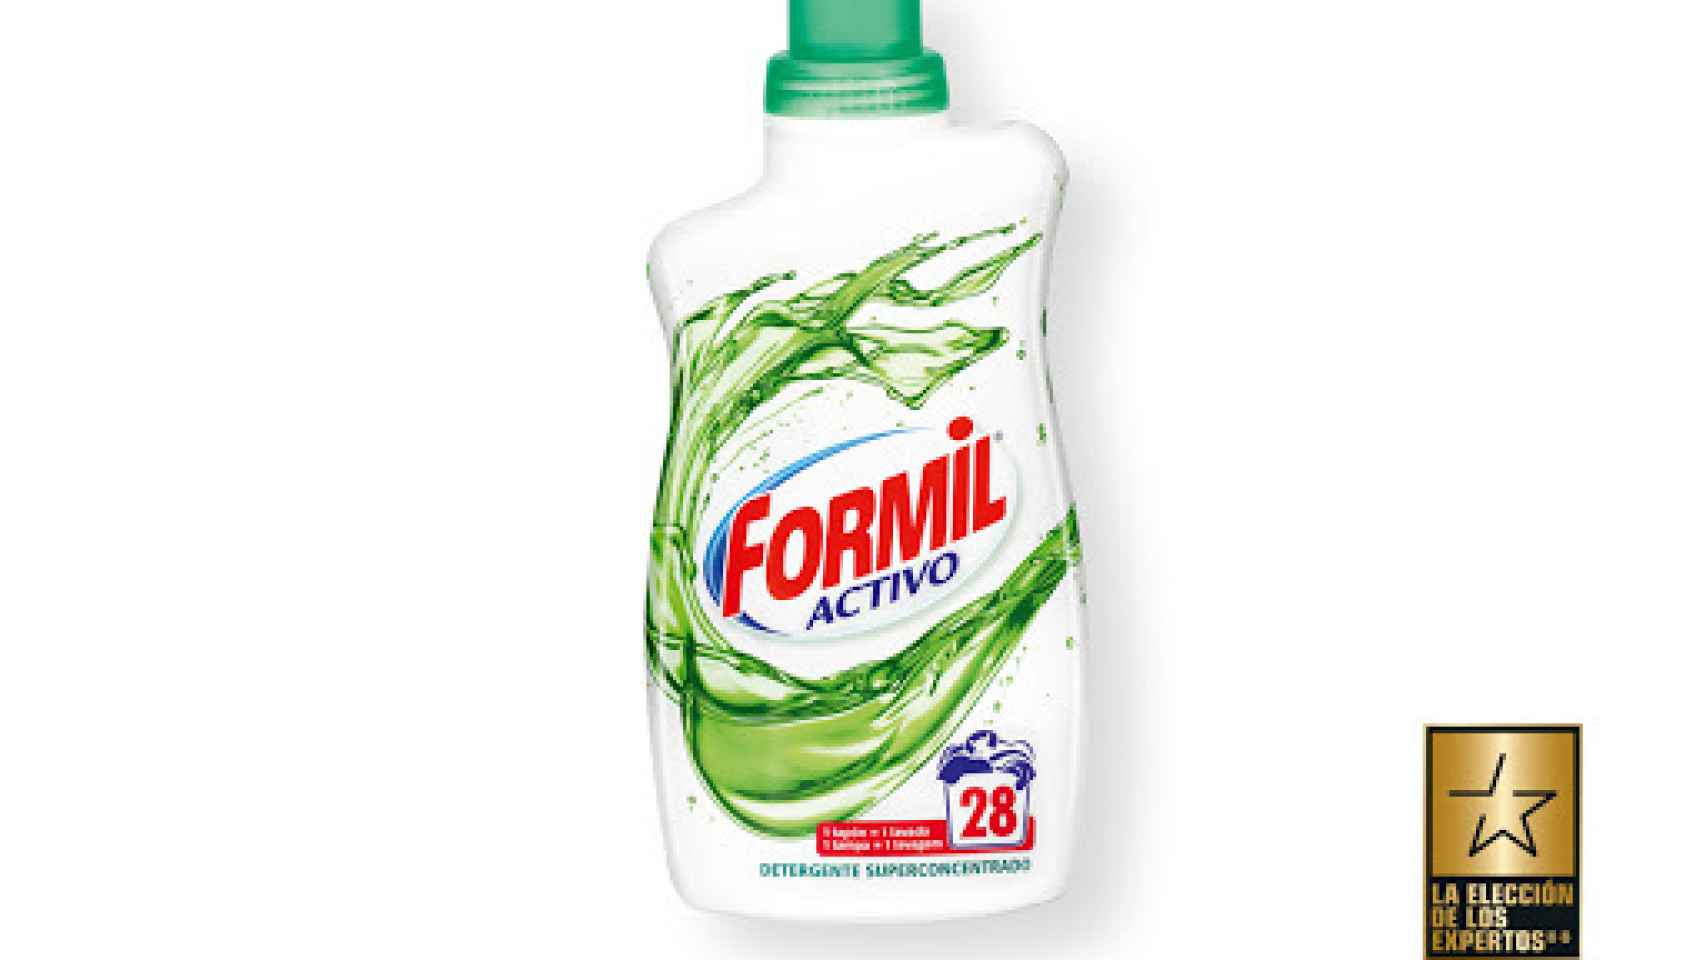 Detergente superconcentrado de Formil, la marca blanca de Lidl.